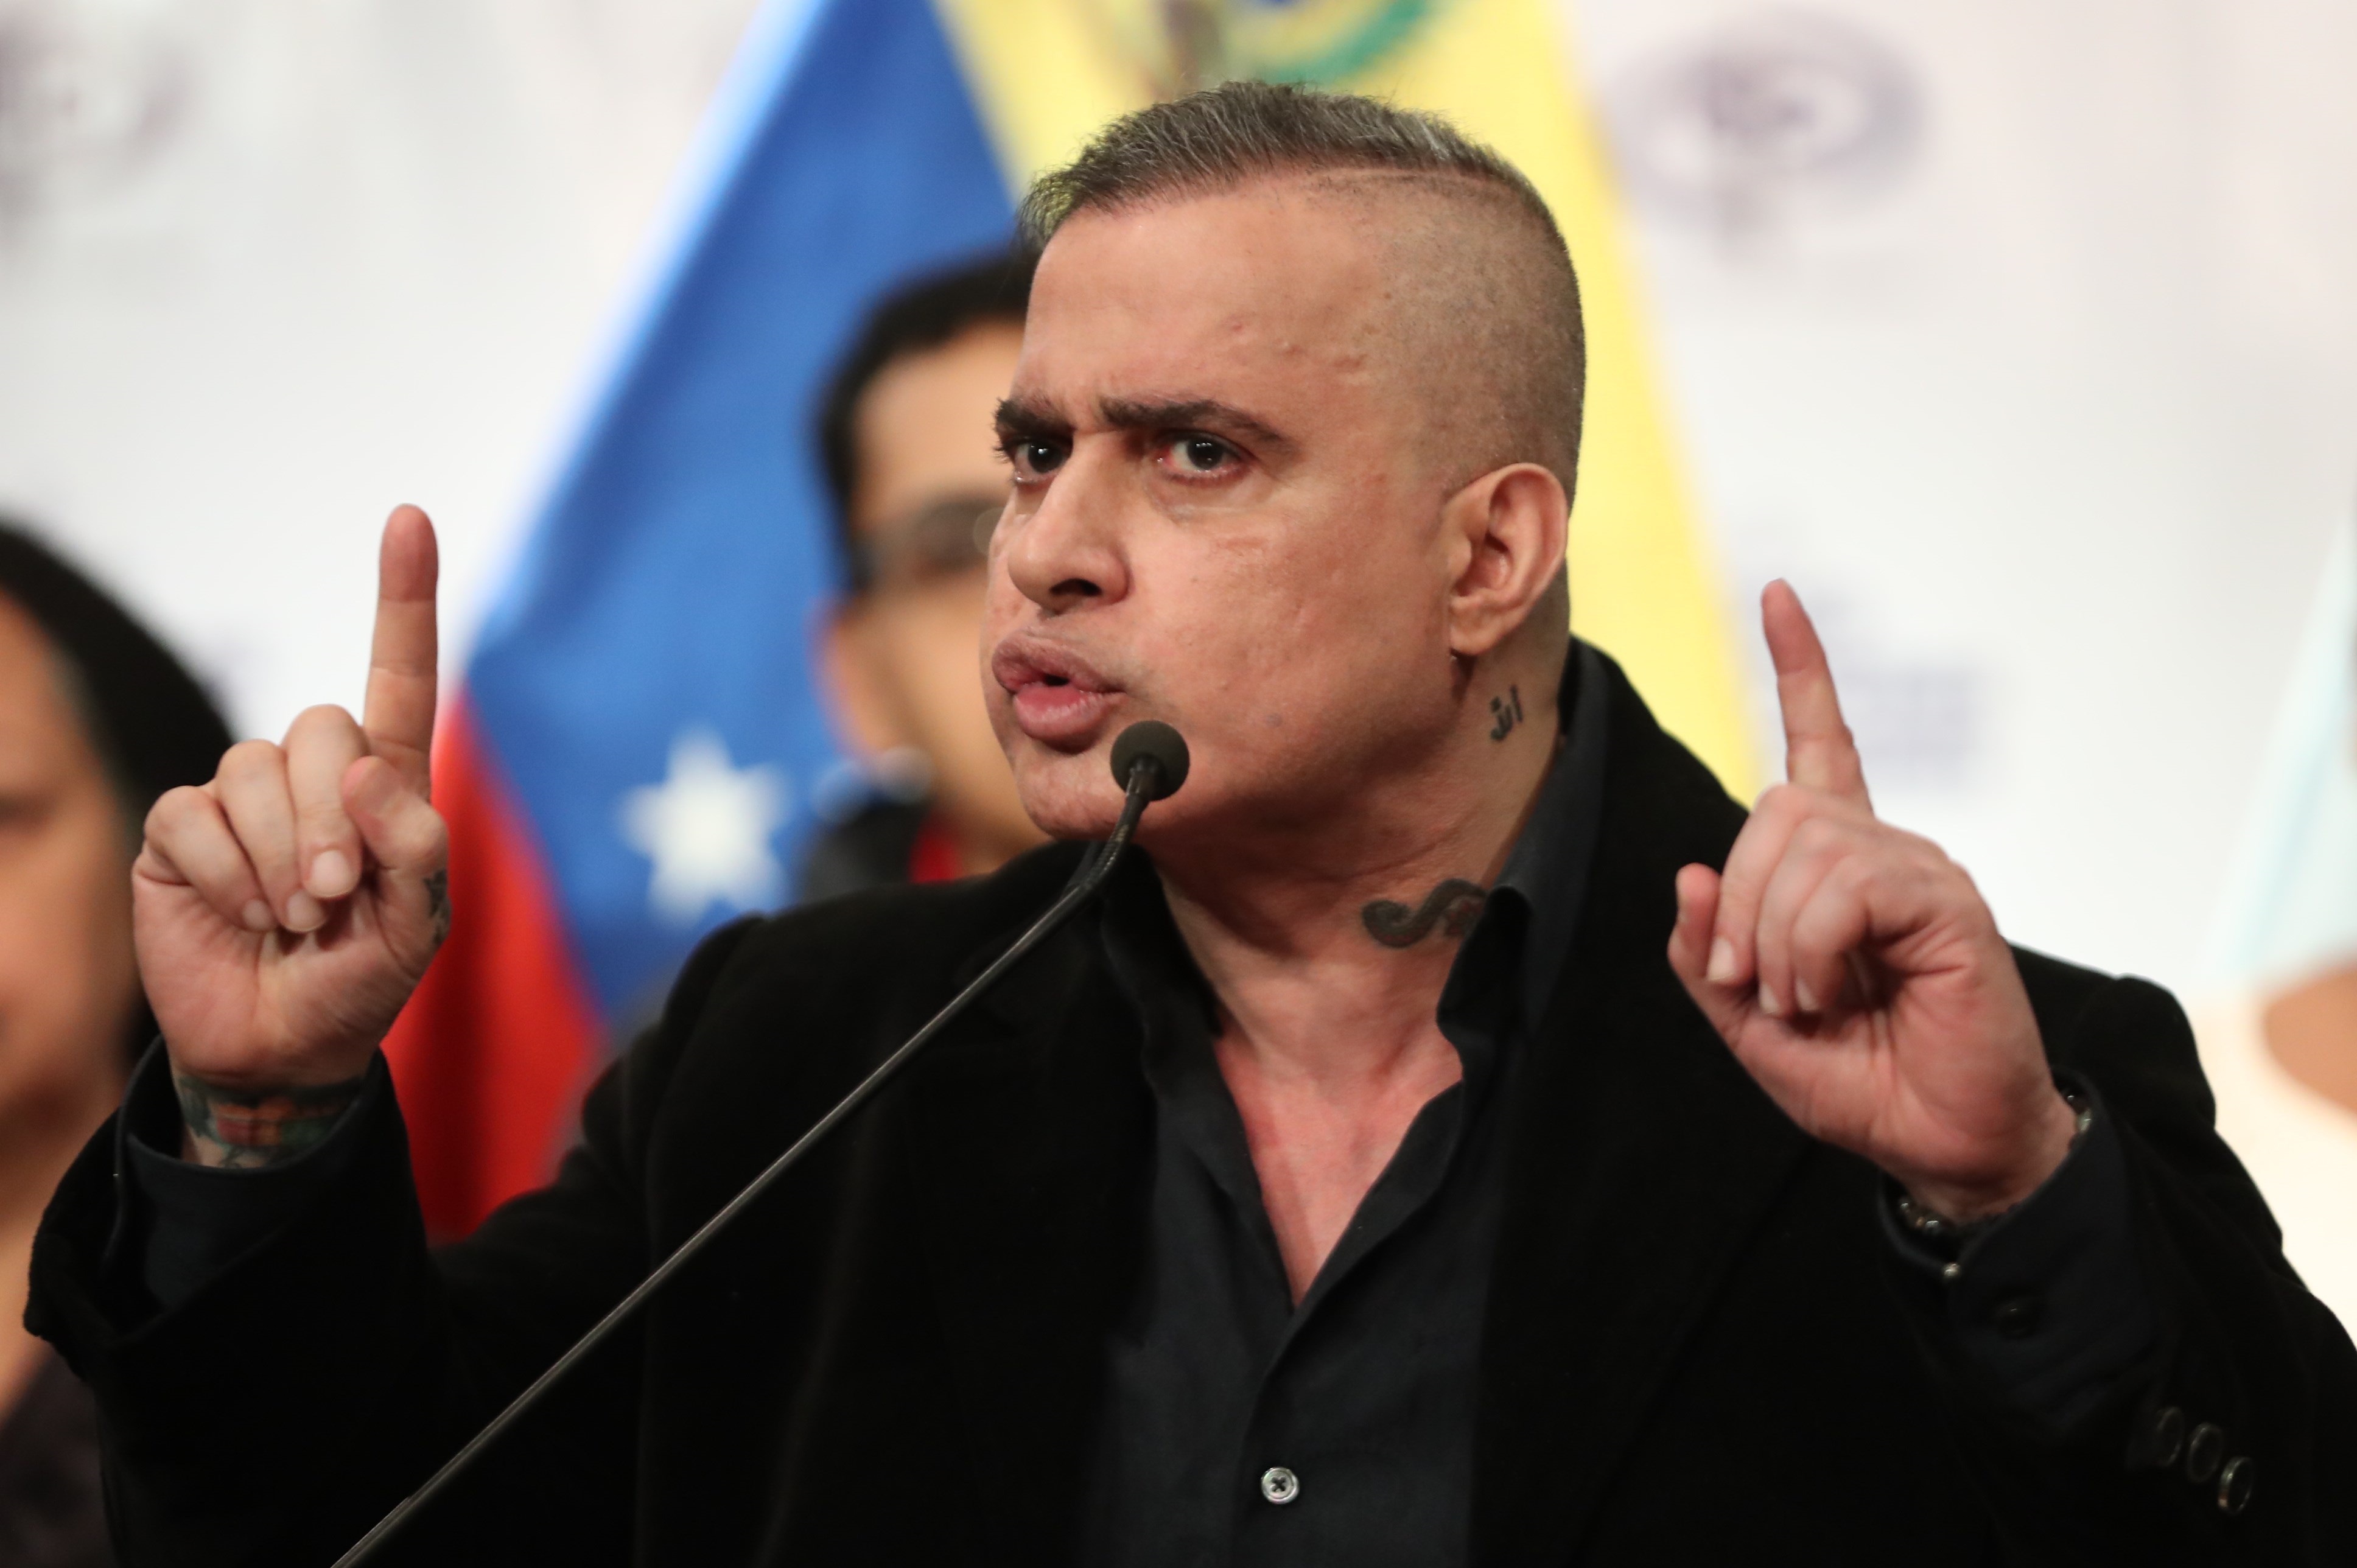 El fiscal general chavista Tarek William Saab amenazó a una periodista colombiana por su investigación sobre el testaferro de Maduro